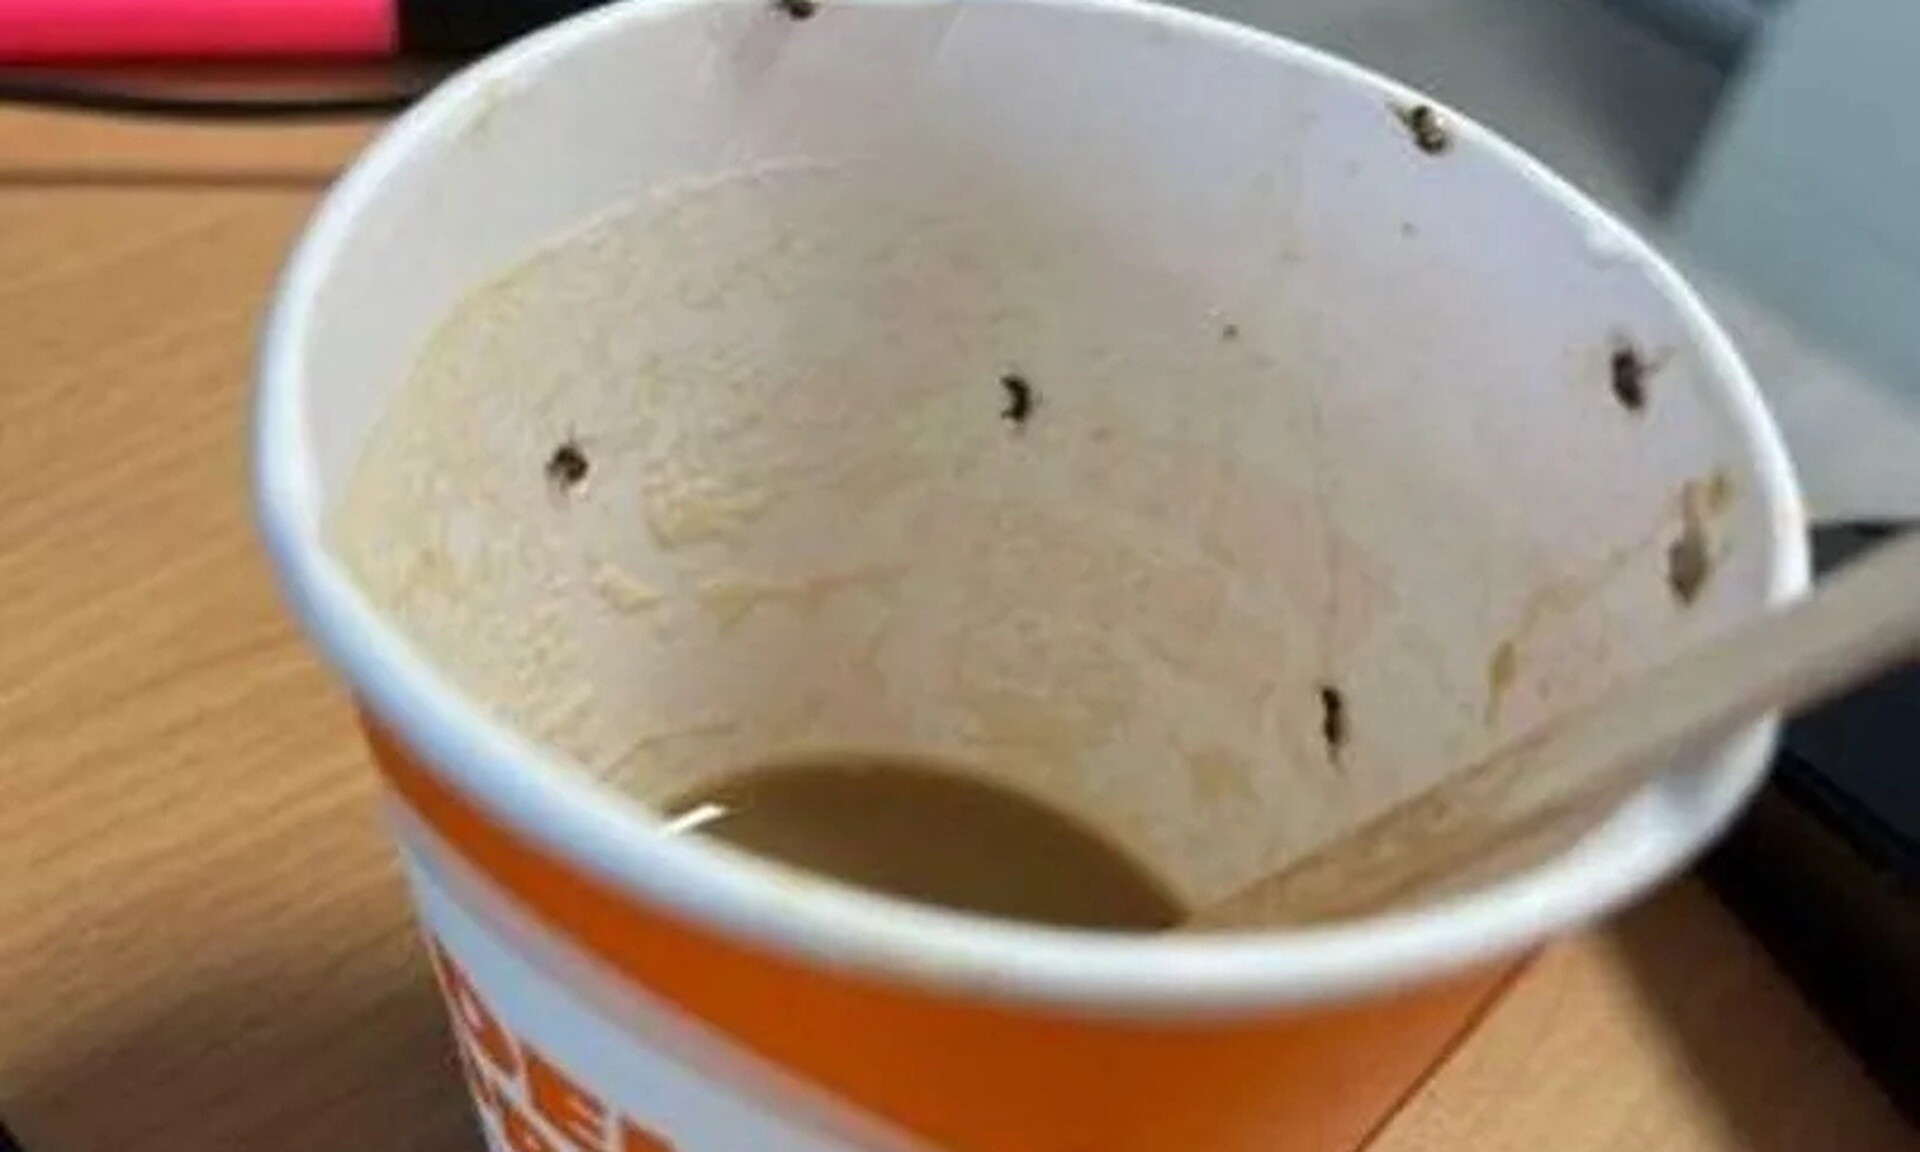 Σοκ για 21χρονη: Πήρε καφέ από αεροδρόμιο γεμάτο... έντομα - Βρέθηκε στην εντατική